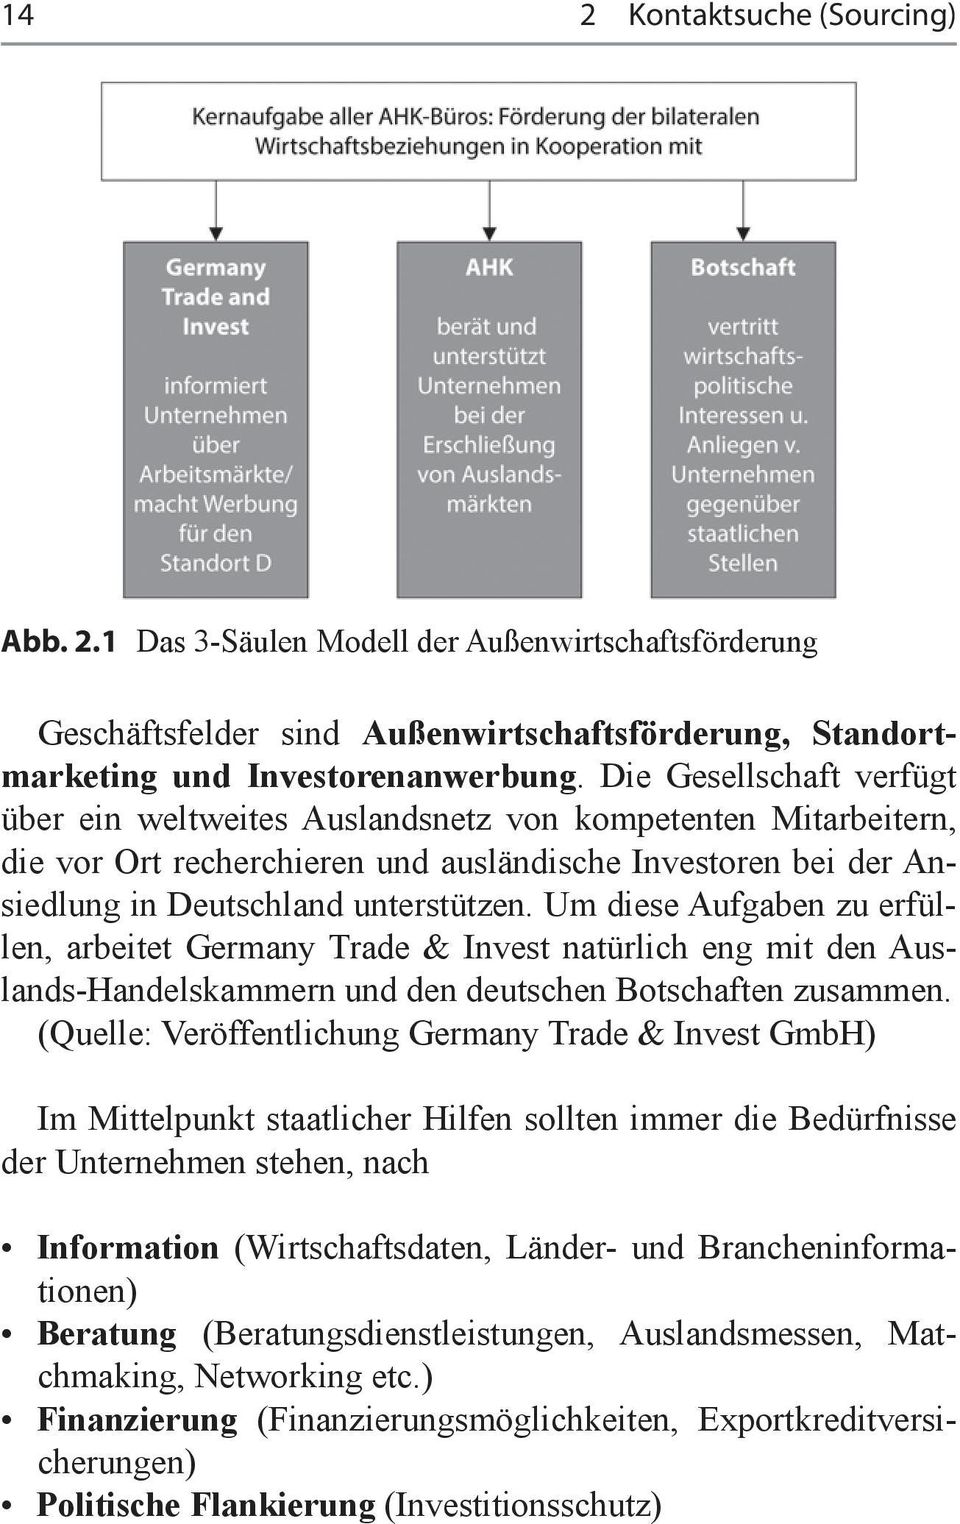 Um diese Aufgaben zu erfüllen, arbeitet Germany Trade & Invest natürlich eng mit den Auslands-Handelskammern und den deutschen Botschaften zusammen.